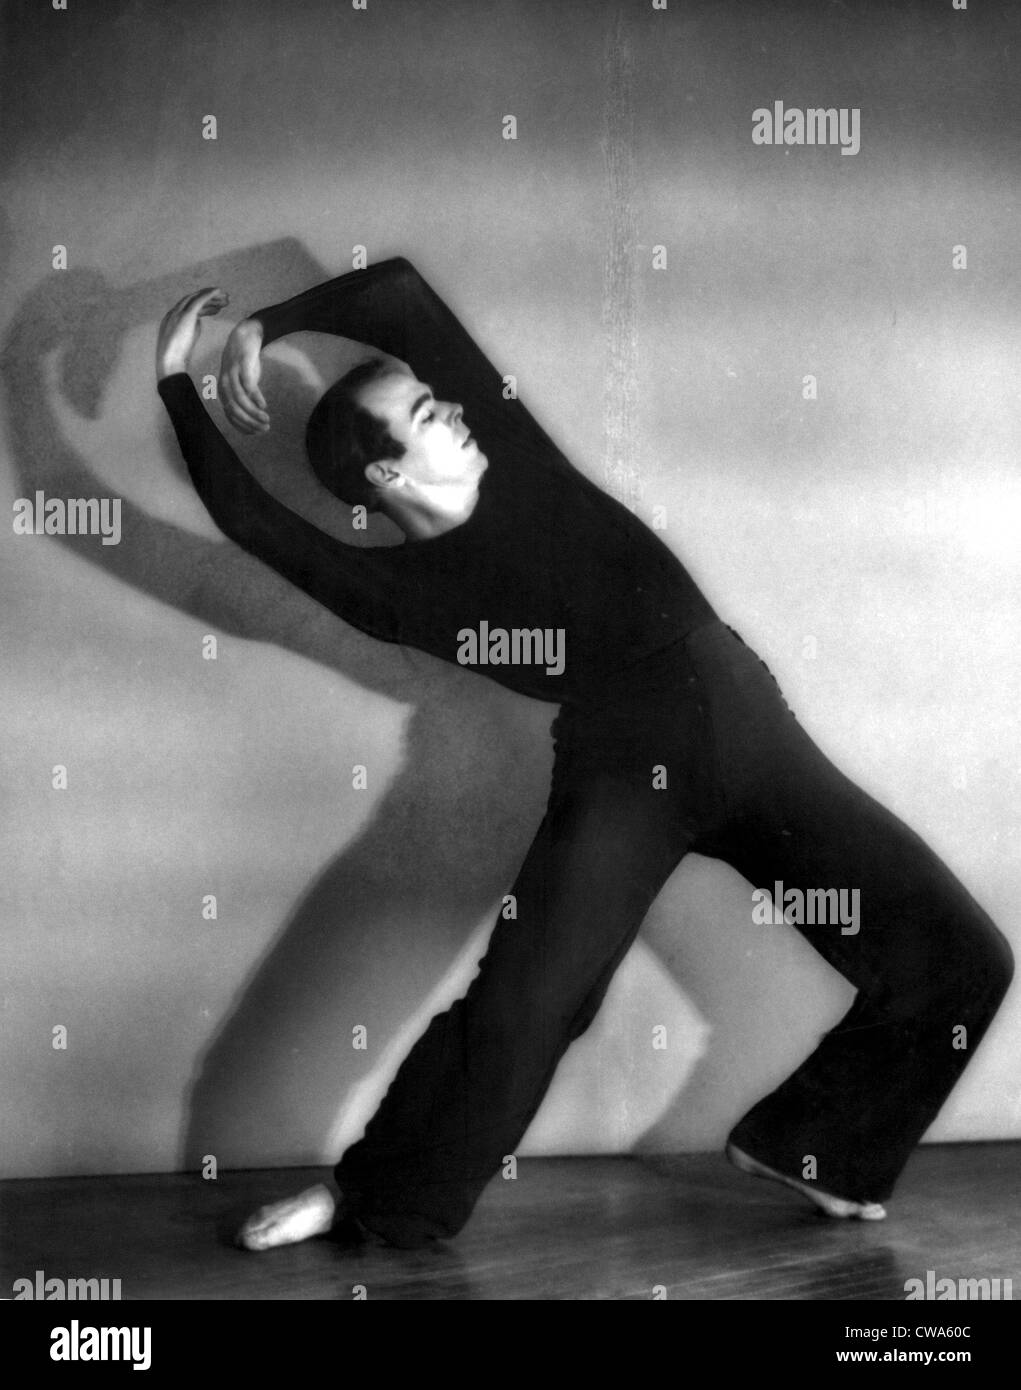 Charles Weidman, danseuse, 1934.. Avec la permission de la CSU : Archives / Everett Collection Banque D'Images